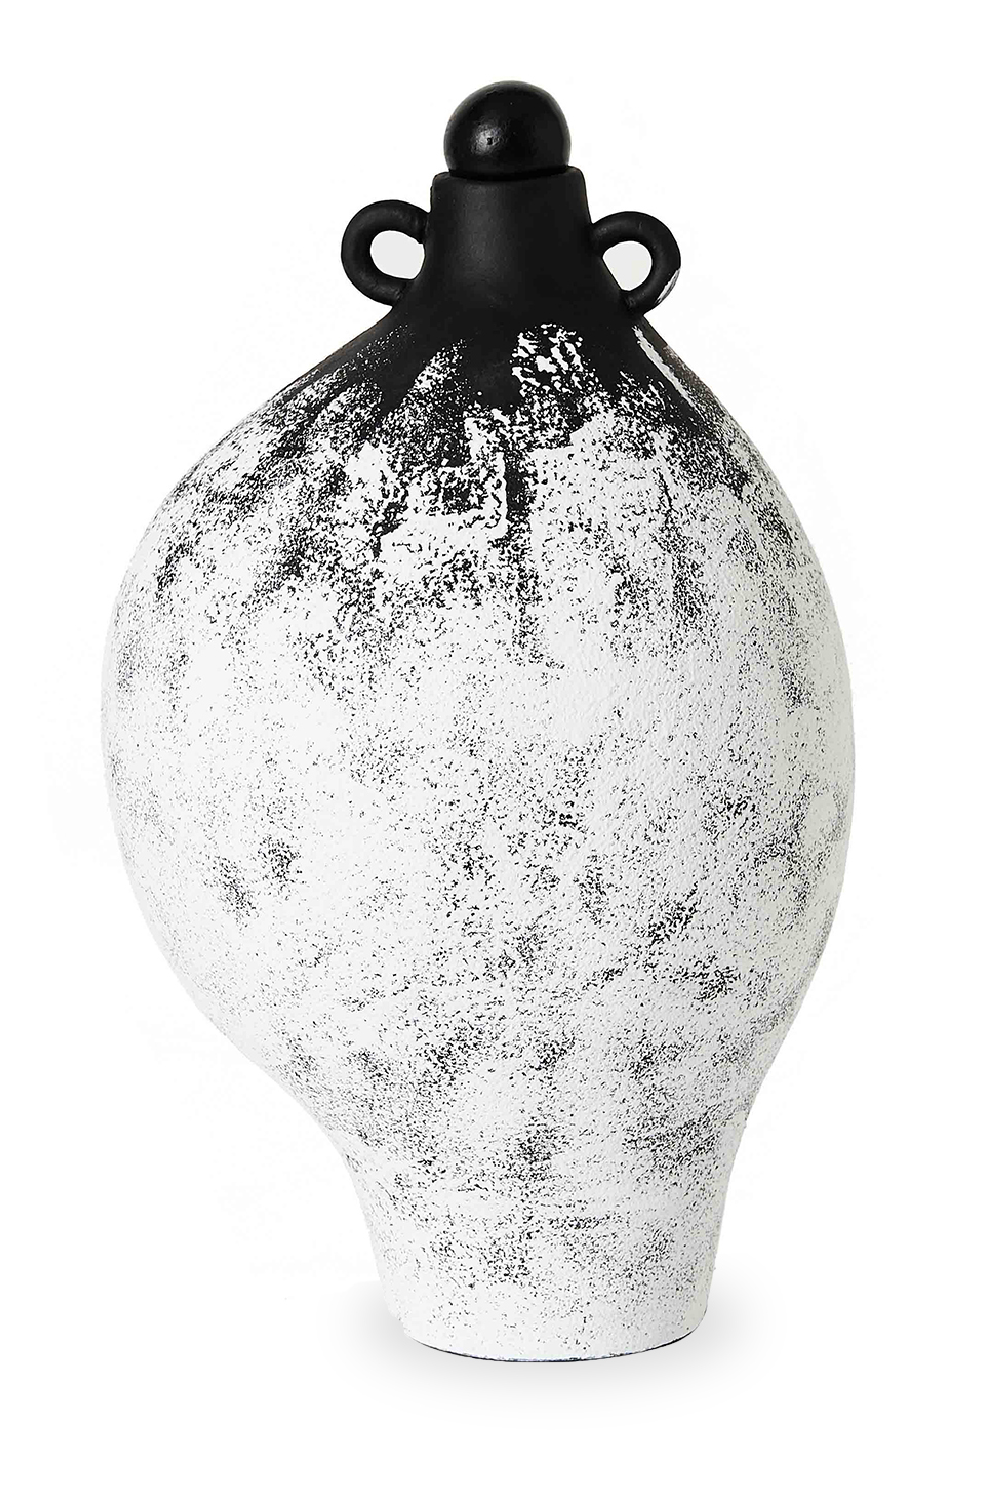 Sculptural Ceramic Vase | Liang & Eimil Paio | Oroa.com